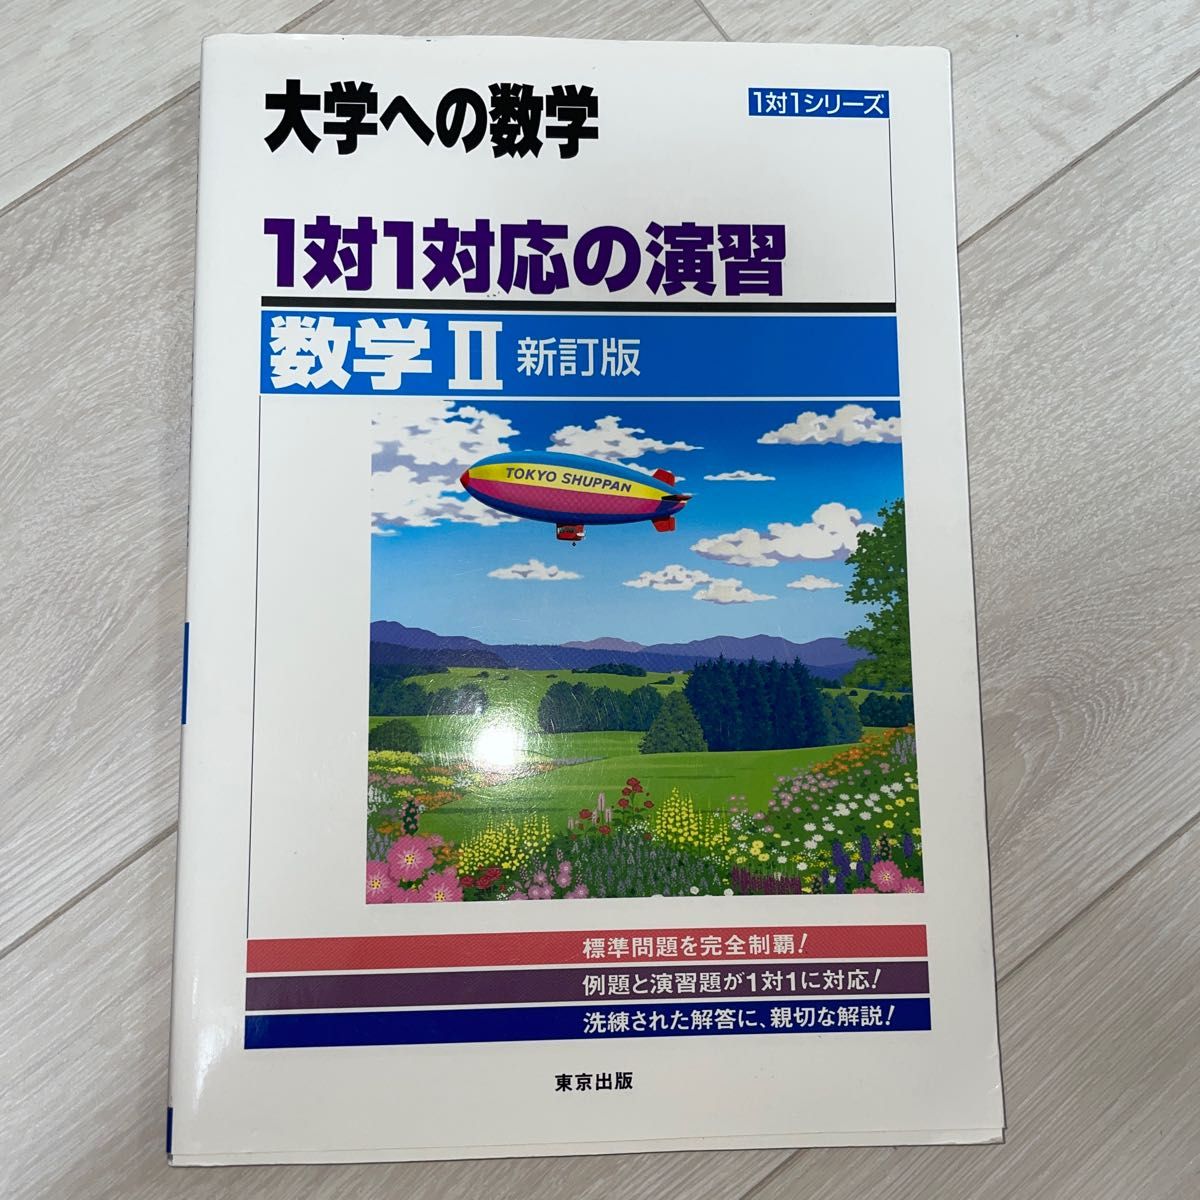 大学への数学 1対1対応の演習 数学Ⅱ 新訂版 1対1シリーズ 大学受験 東京出版